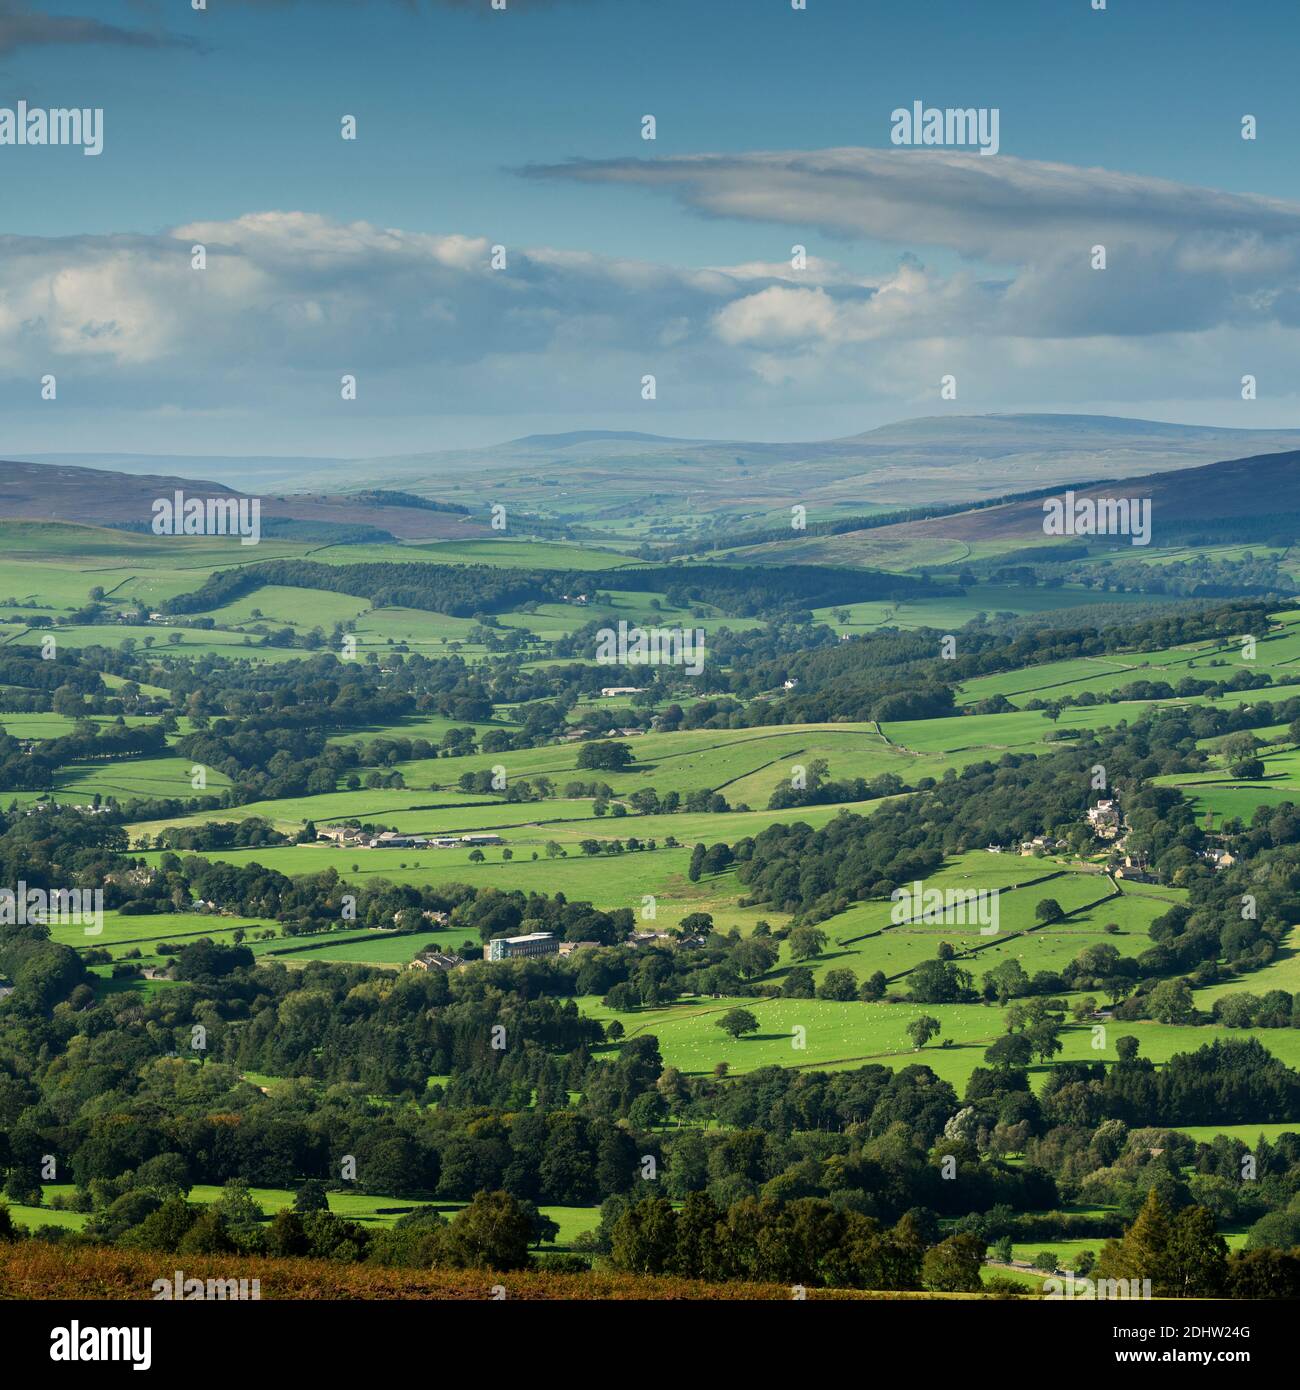 Vista panoramica sulla campagna di Wharfedale (ampia valle verde, colline ondulate, alture, luce del sole sulla terra, cielo blu) - West Yorkshire, Inghilterra, Regno Unito. Foto Stock